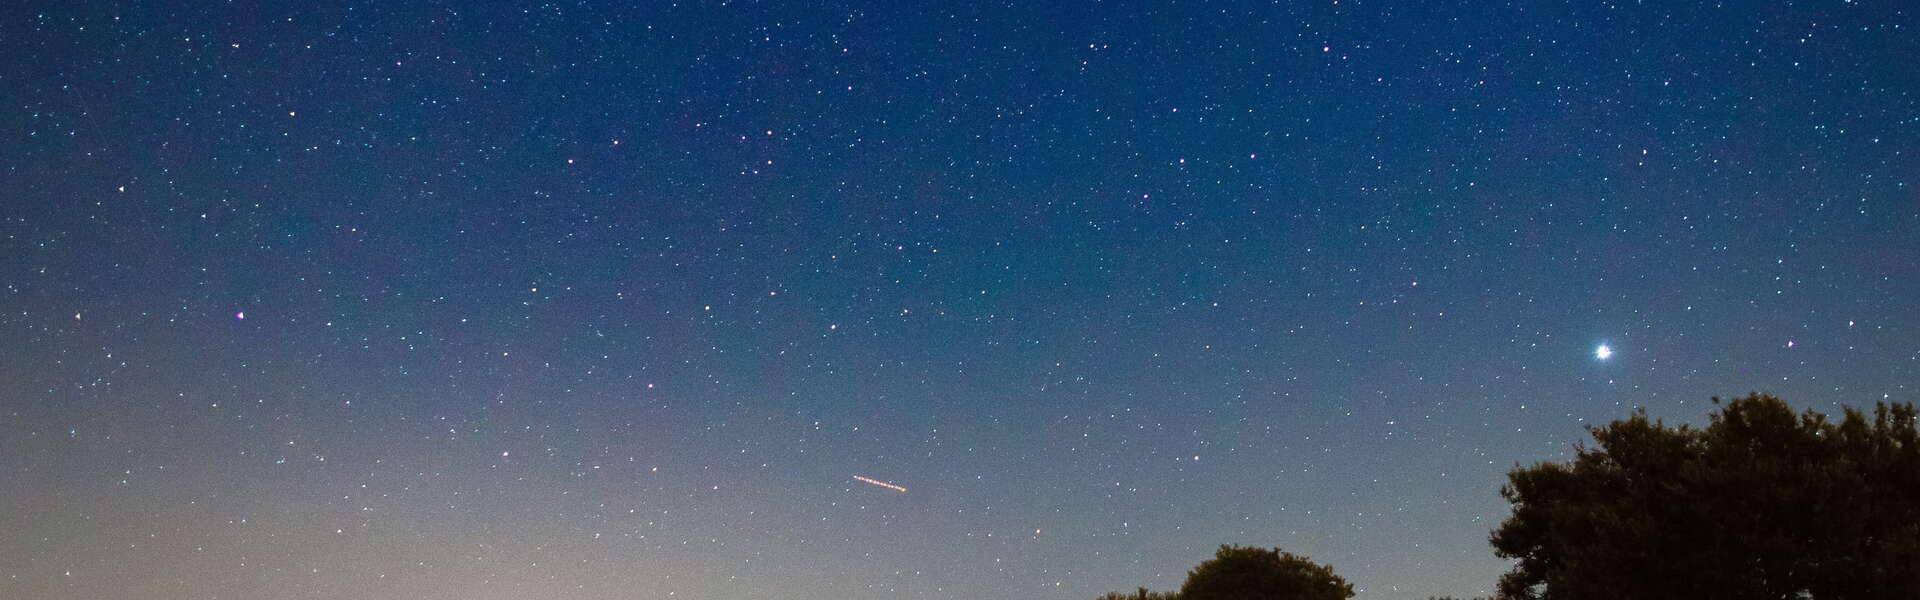 Bild: Werfen Sie einen Blick in den Sternenhimmel von Małopolska! Nicht nur am Asteroidentag!